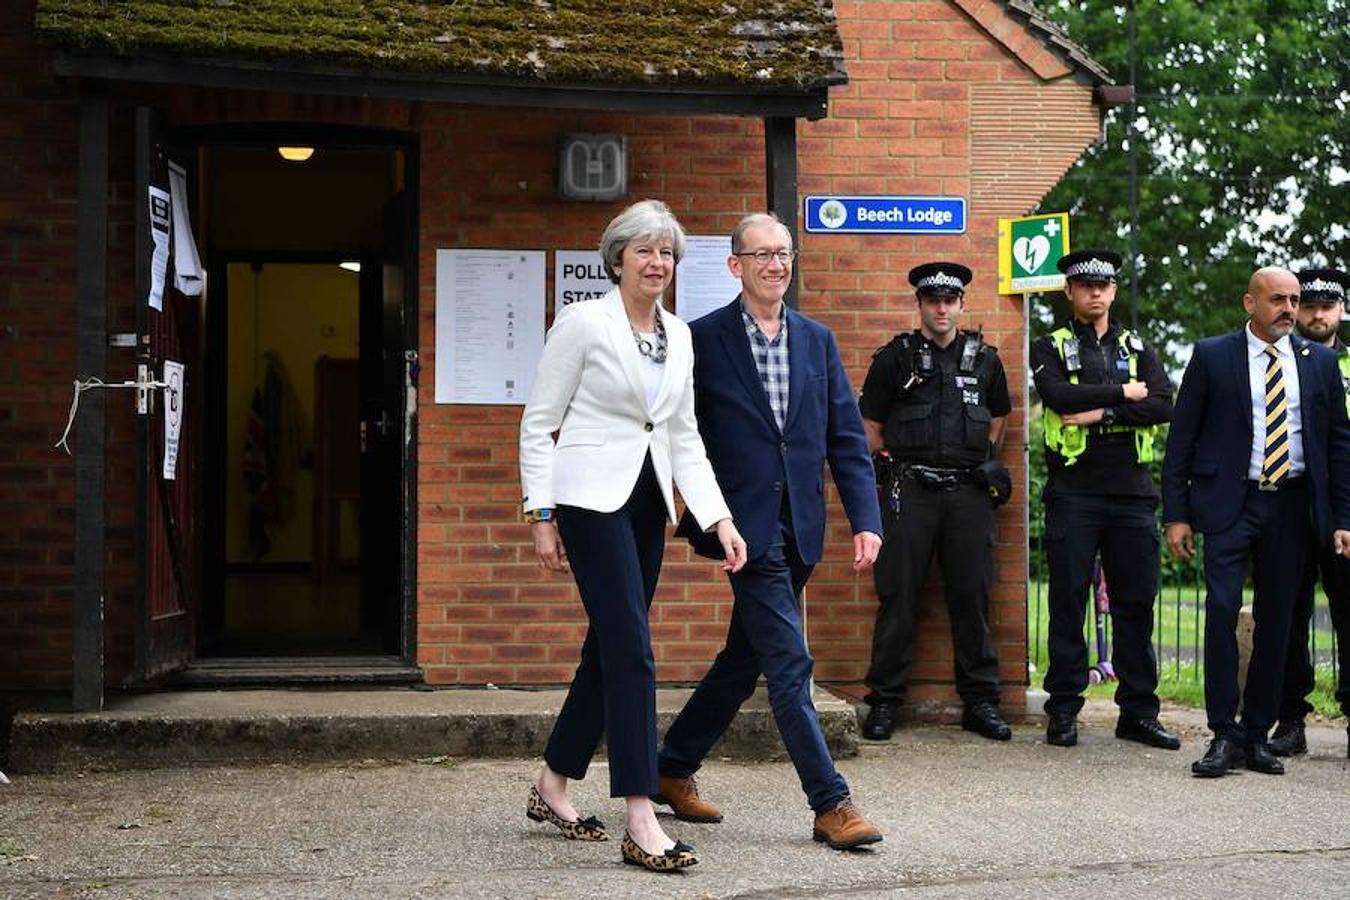 Theresay May fue a votar junto a su marido en Londres. La primera ministra de Gran Bretaña, Theresa May, y su esposo Philip, abandonan el colegio electoral tras echar su papeleta en Sonning, al oeste de Londres